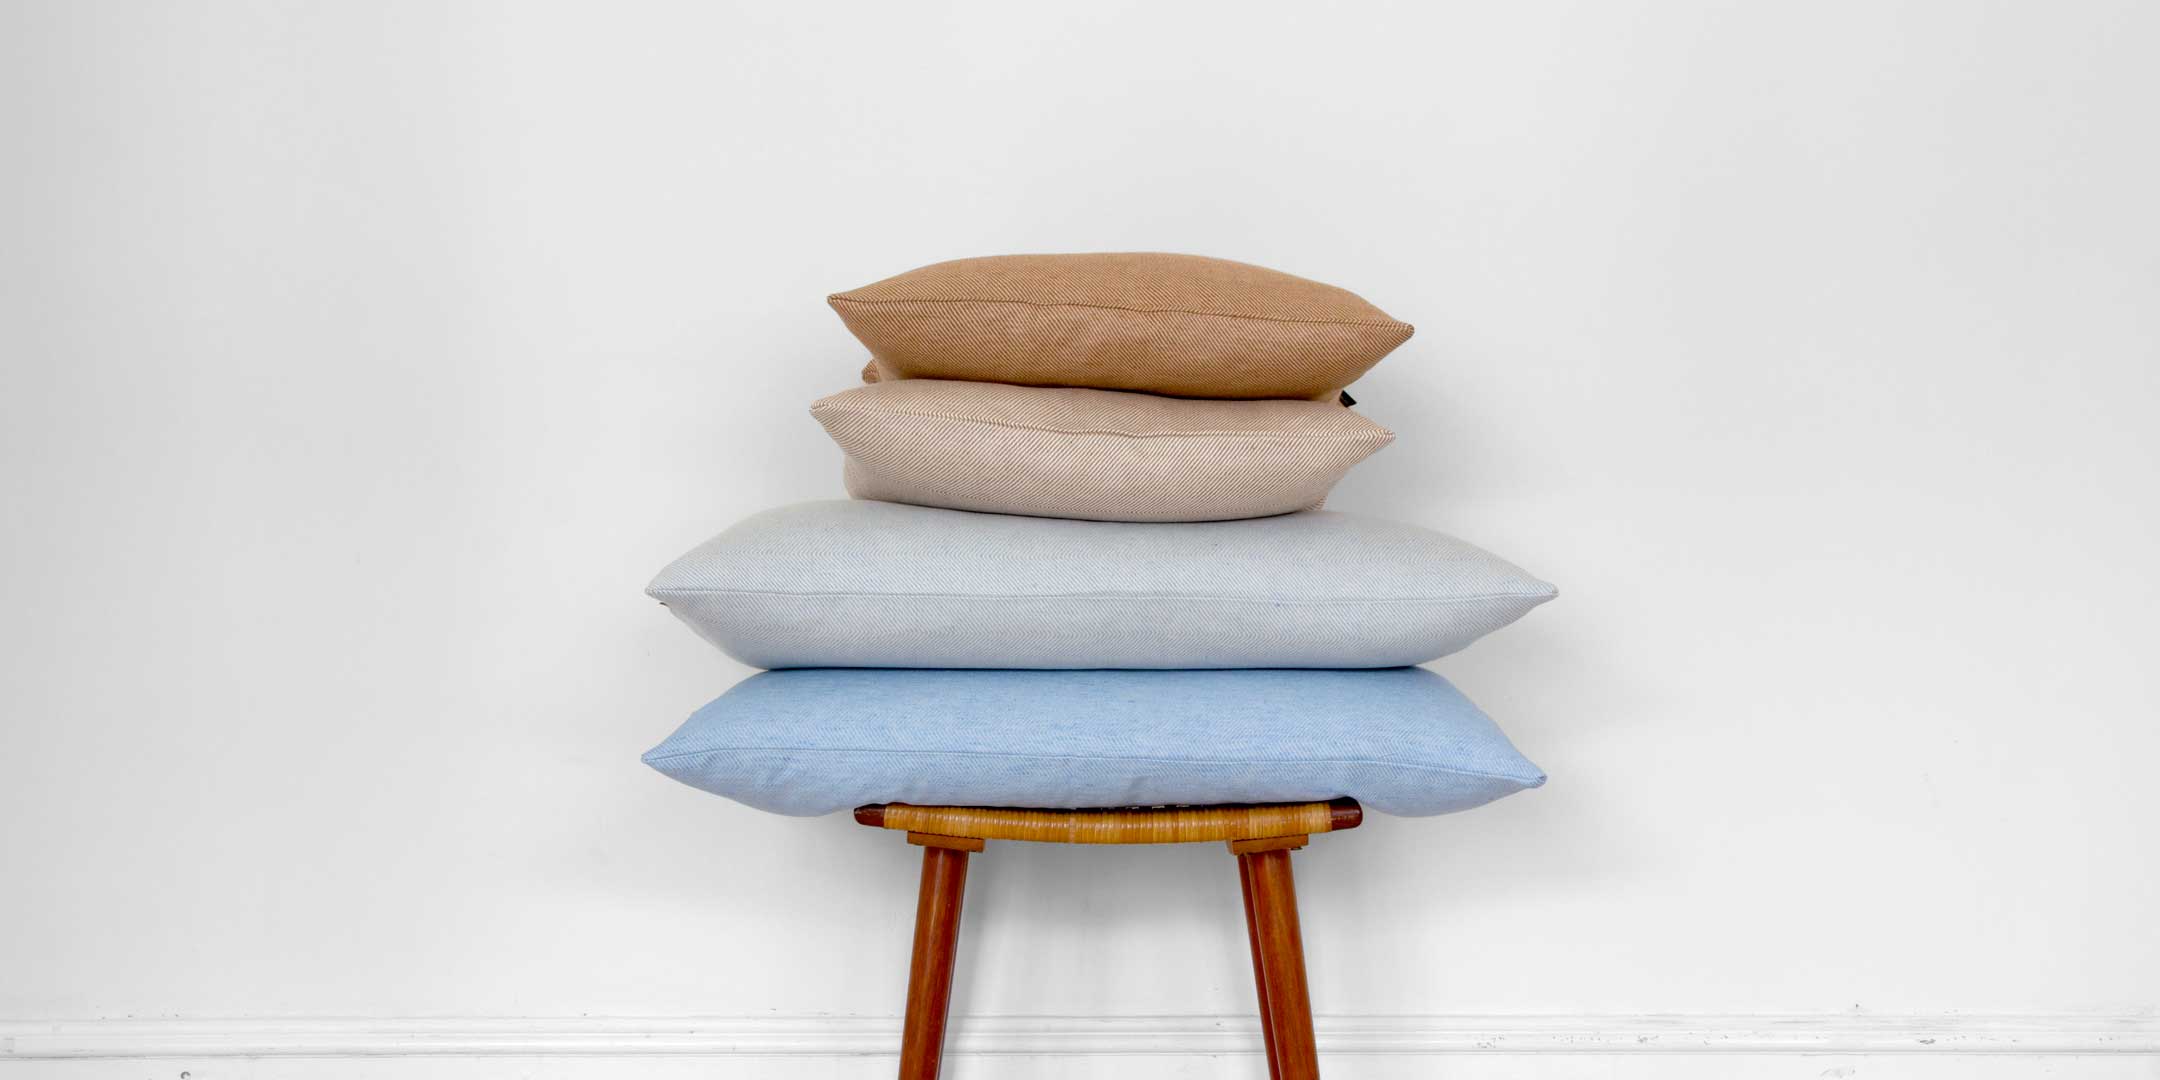 Cushions linen/cotton, design by Anne Rosenberg, RosenbergCph